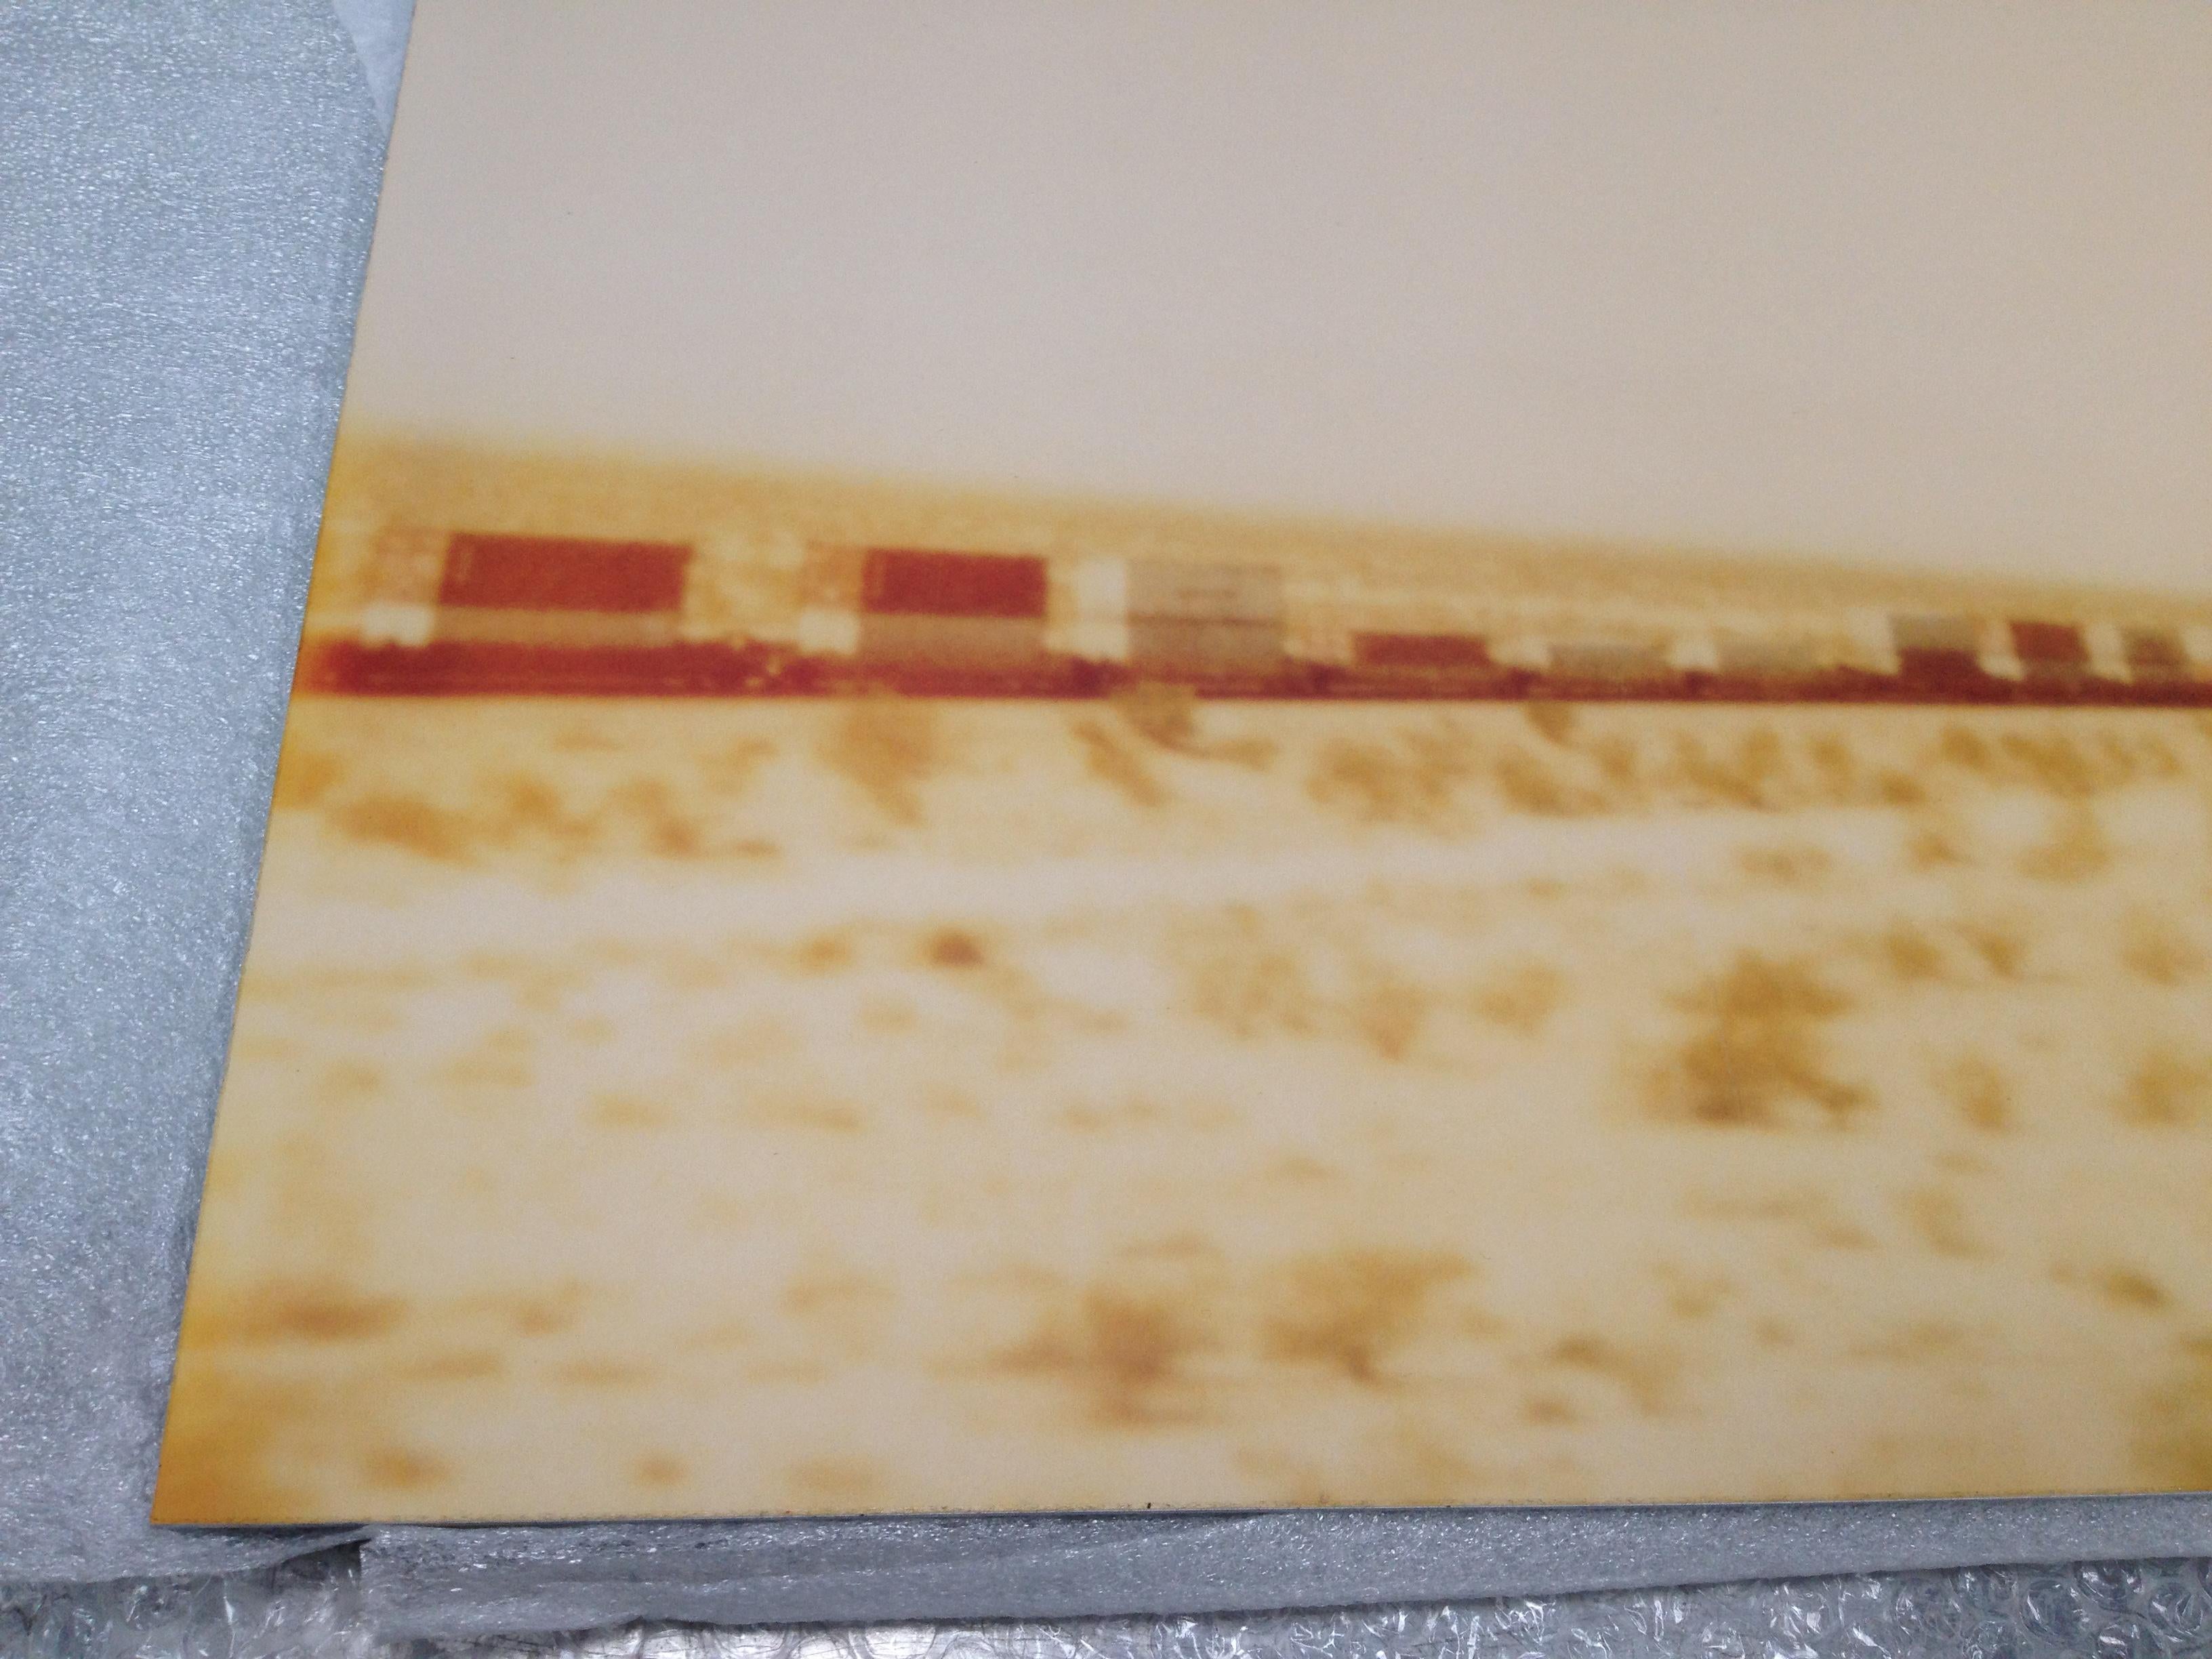 Der Zug überquert die Ebene (Ödland) 
Auflage 2/5, 55x72cm, 1999,
analoger C-Print, handgedruckt vom Künstler auf Fuji Crystal Archive Papier,
basierend auf einem abgelaufenen Polaroid, 
Künstlerinventar Nummer 544.
Montiert auf Aluminium mit mattem